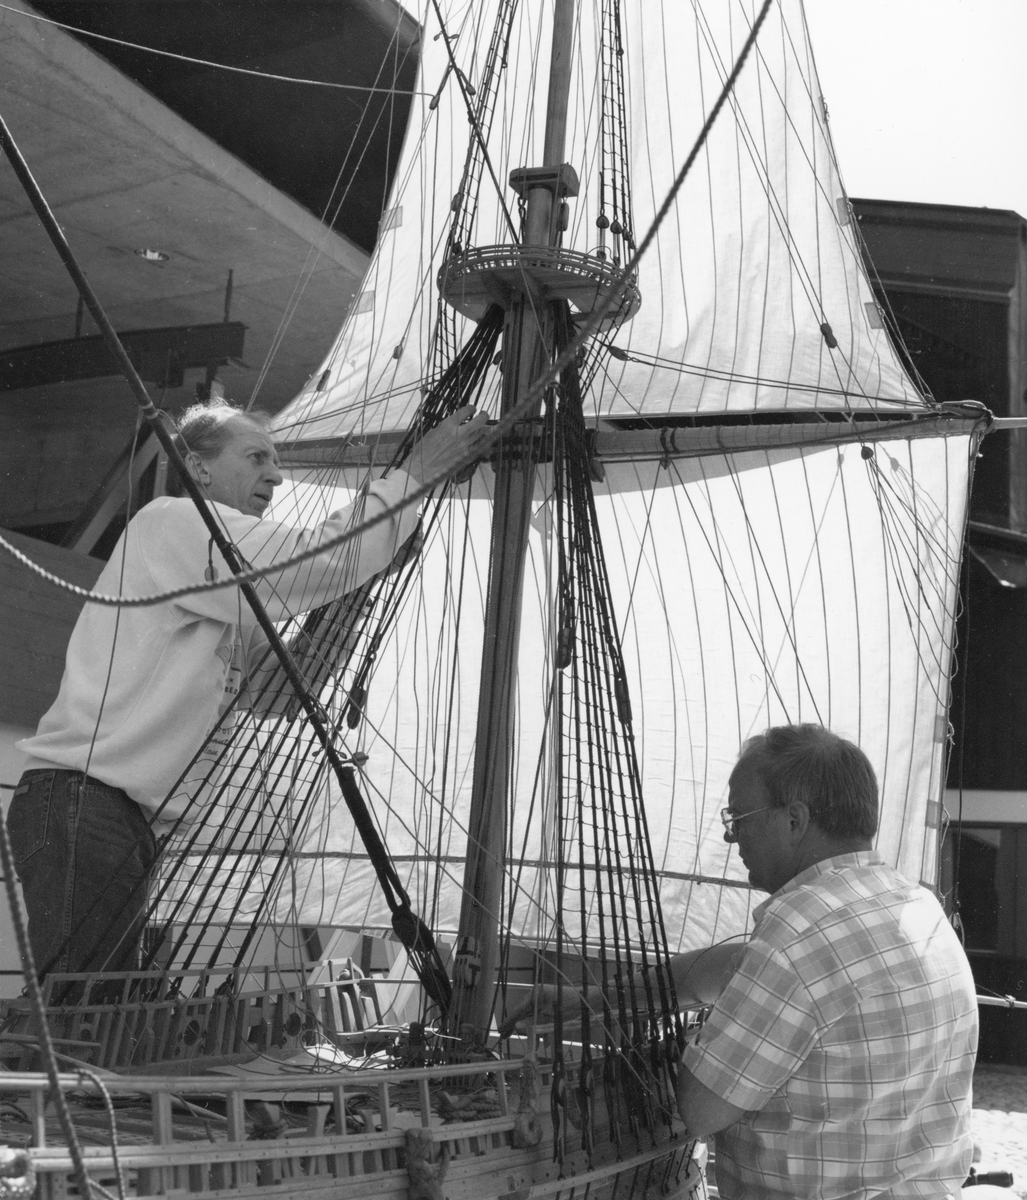 Modellbyggarna Göran Forss (t.v.) och Lennart Forsling i arbete med modellen av Vasa i skala 1:10.